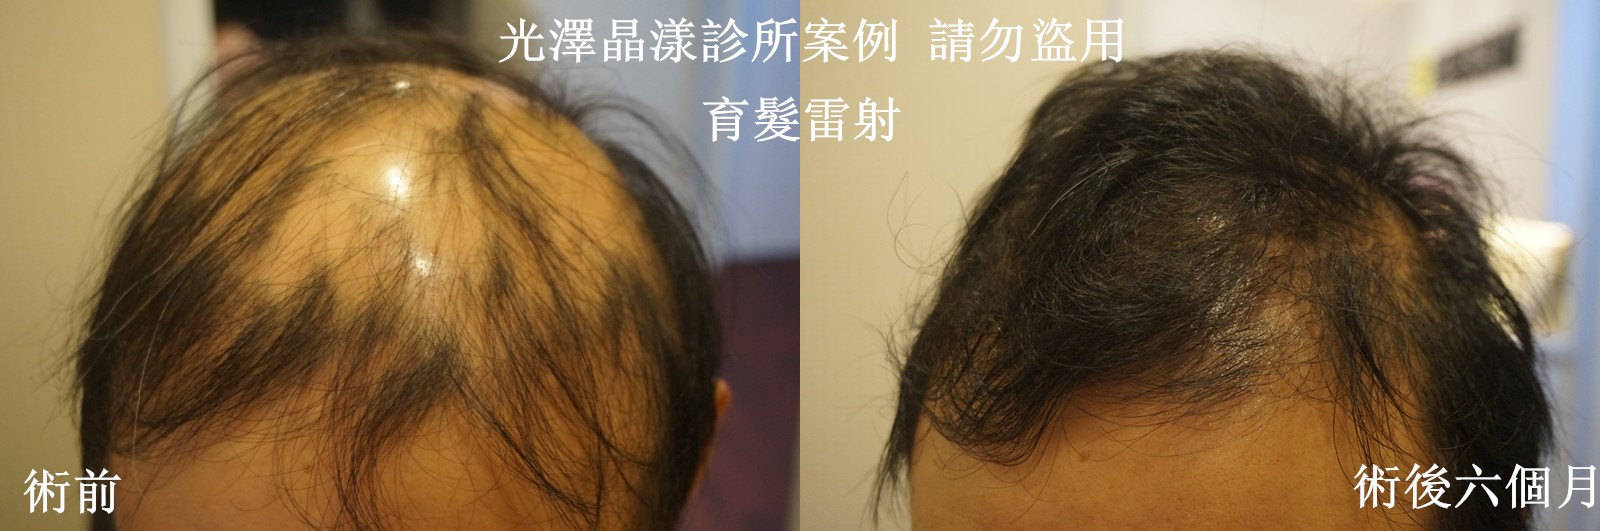 台北禿頭治療成功案例